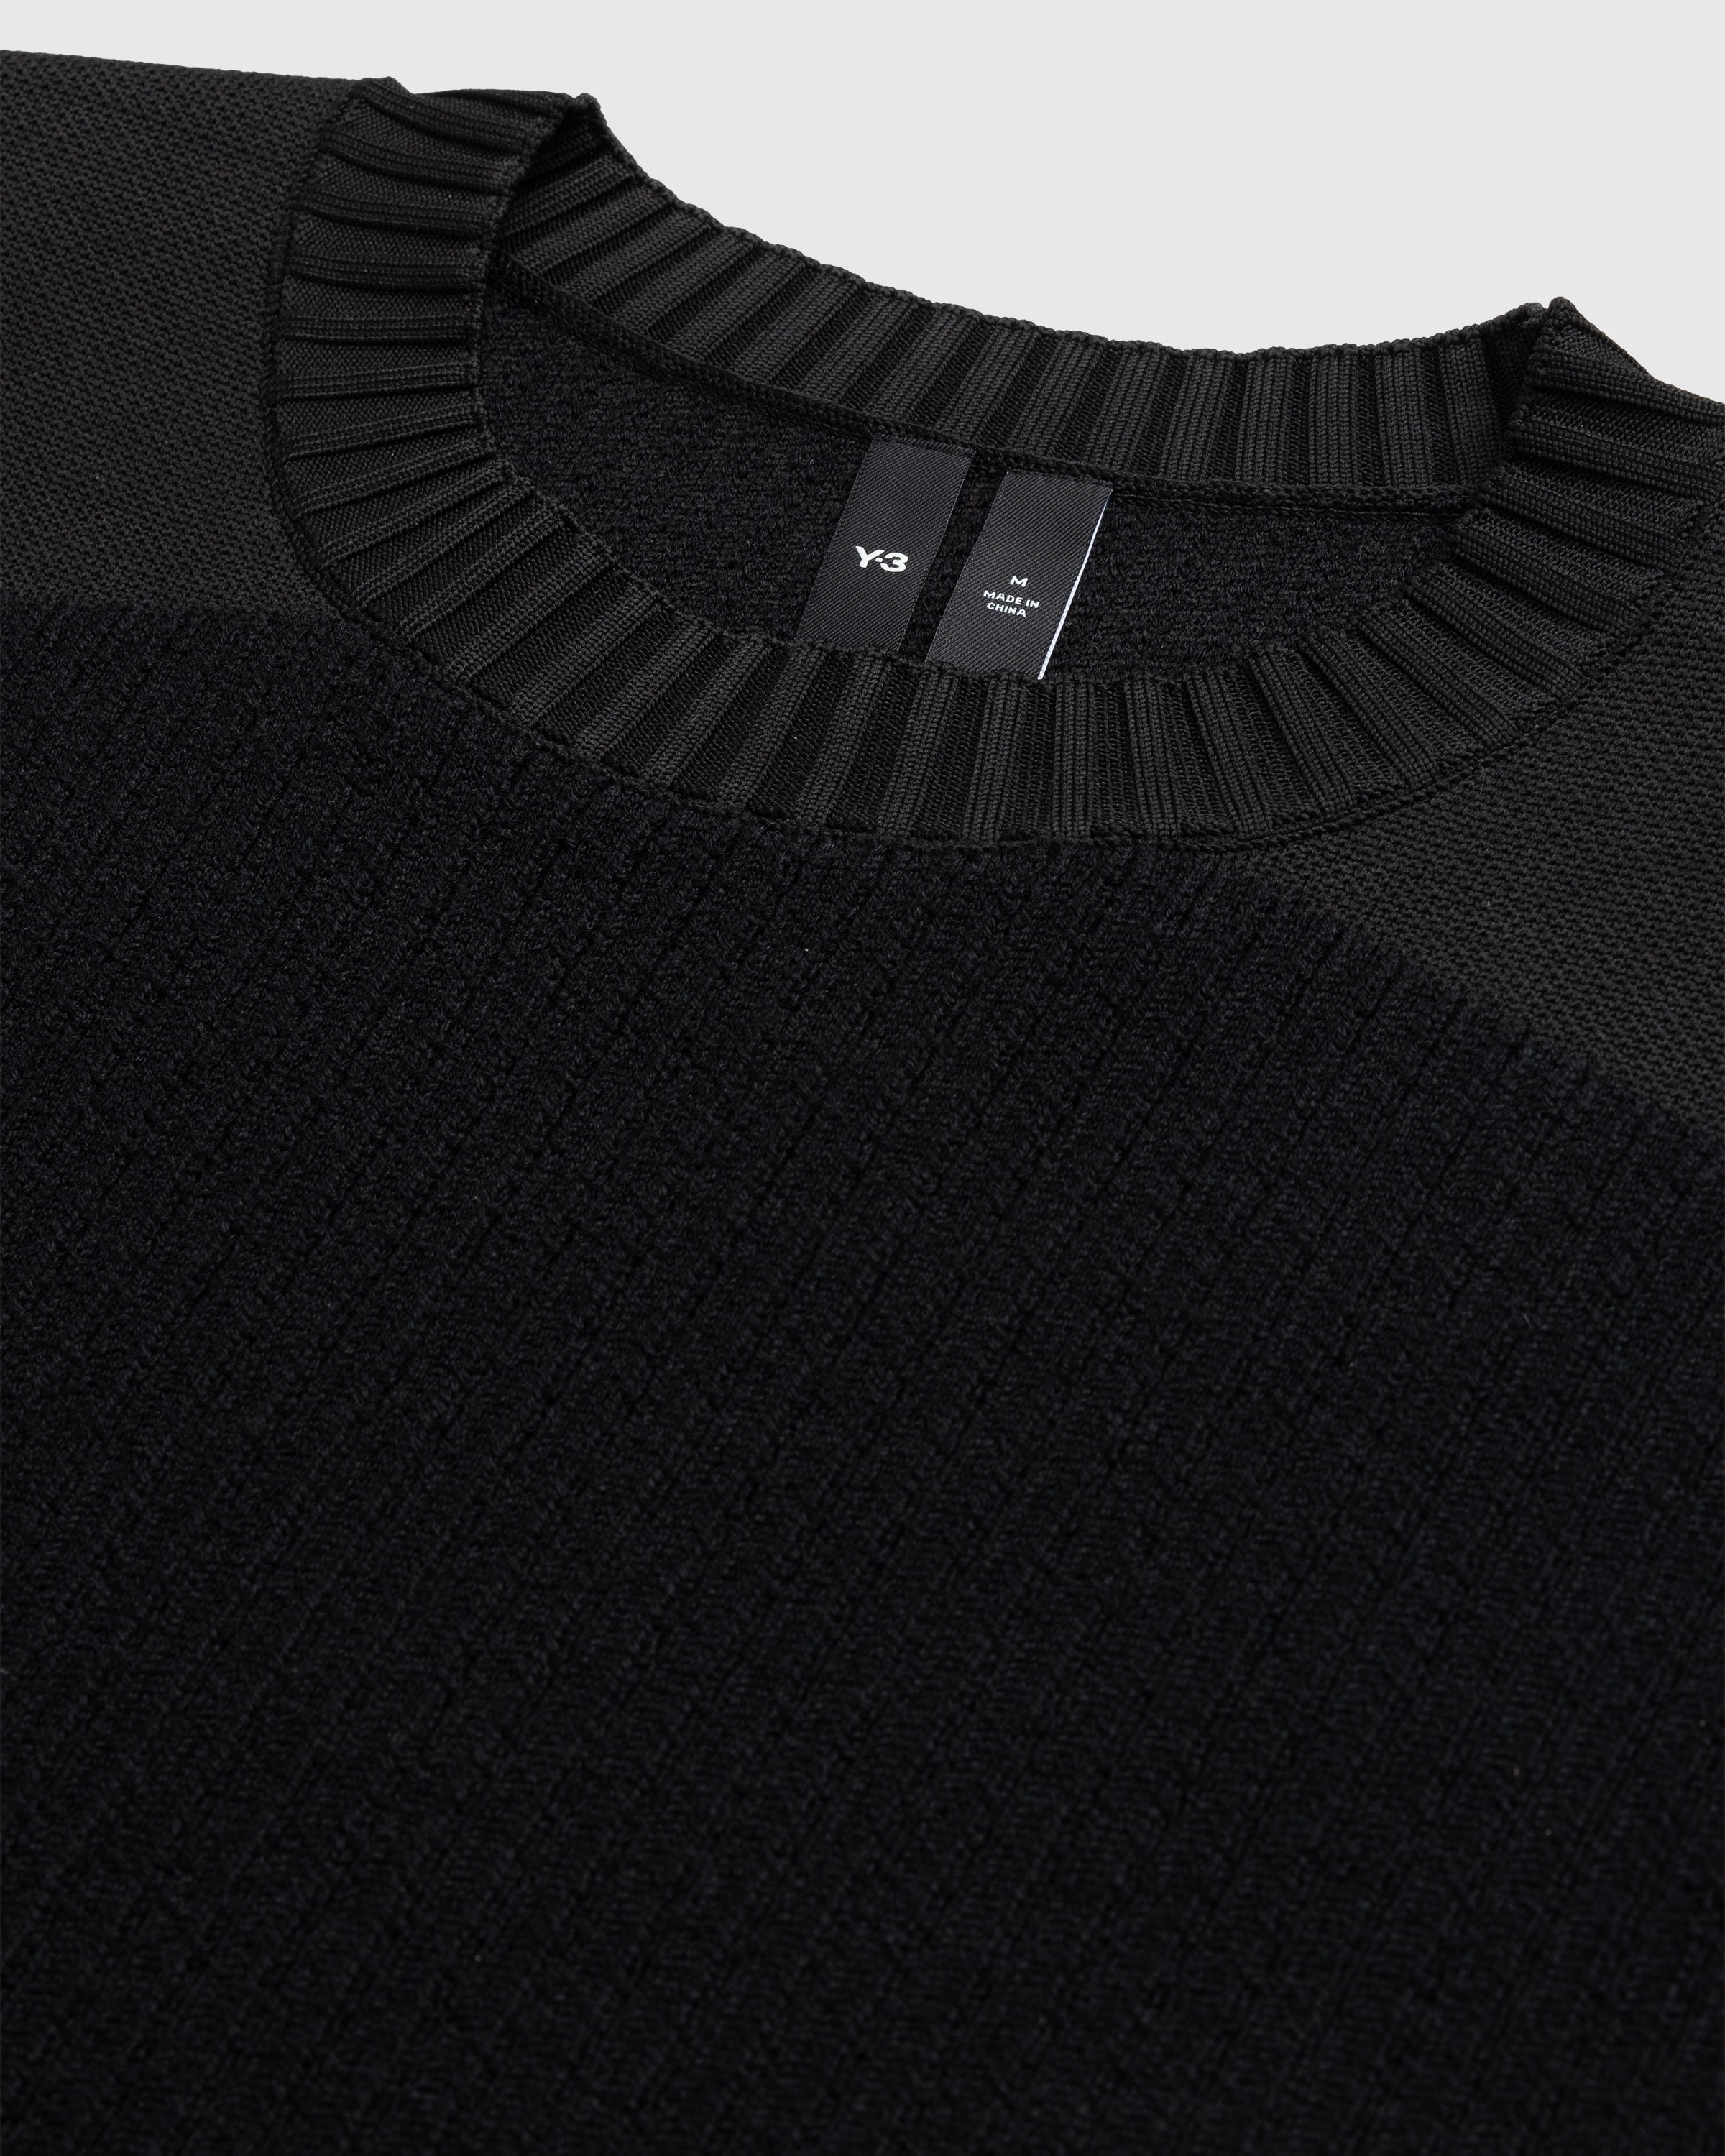 Y-3 - Utility Crewneck Sweater Black - Clothing - Black - Image 5